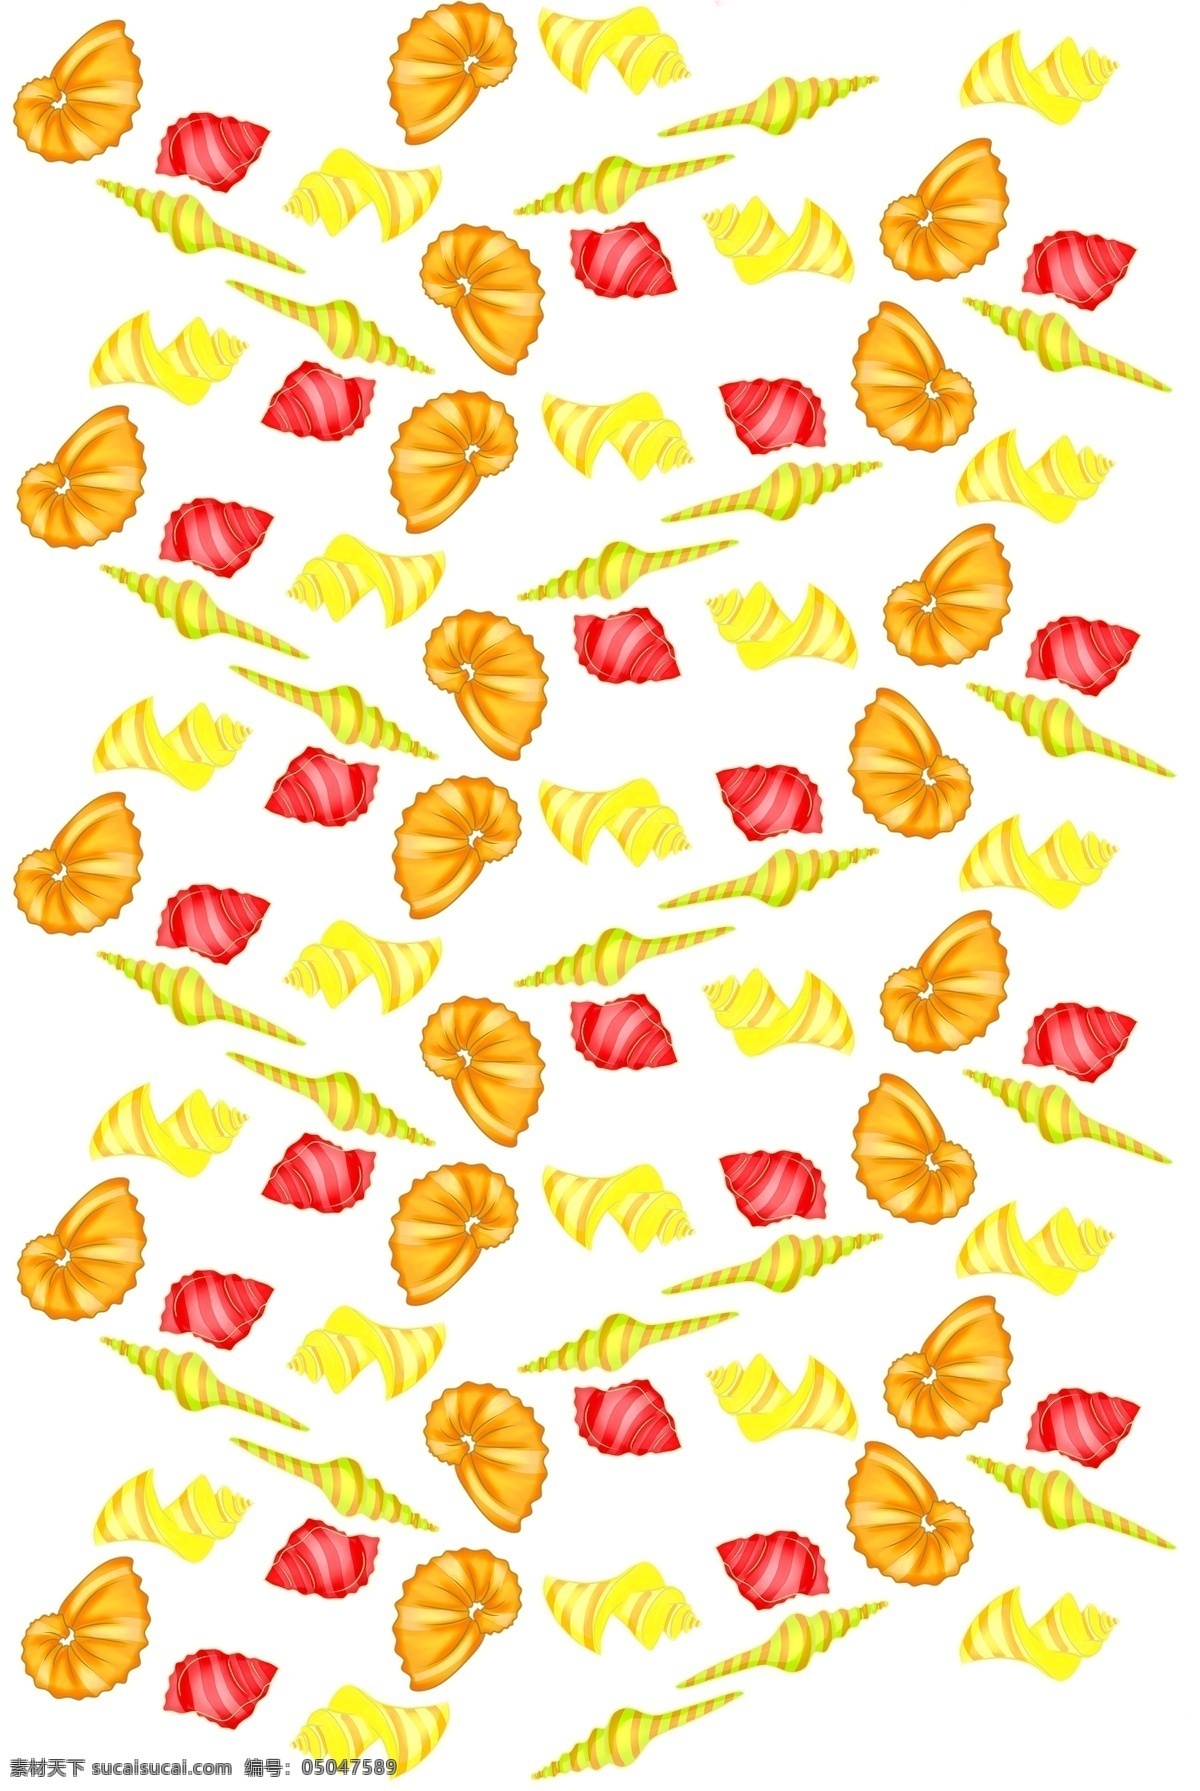 漂亮 贝壳 底纹 插画 漂亮的贝壳 黄色的贝壳 红色的海螺 橘色的贝壳 贝壳底纹 彩色贝壳 贝类底纹插画